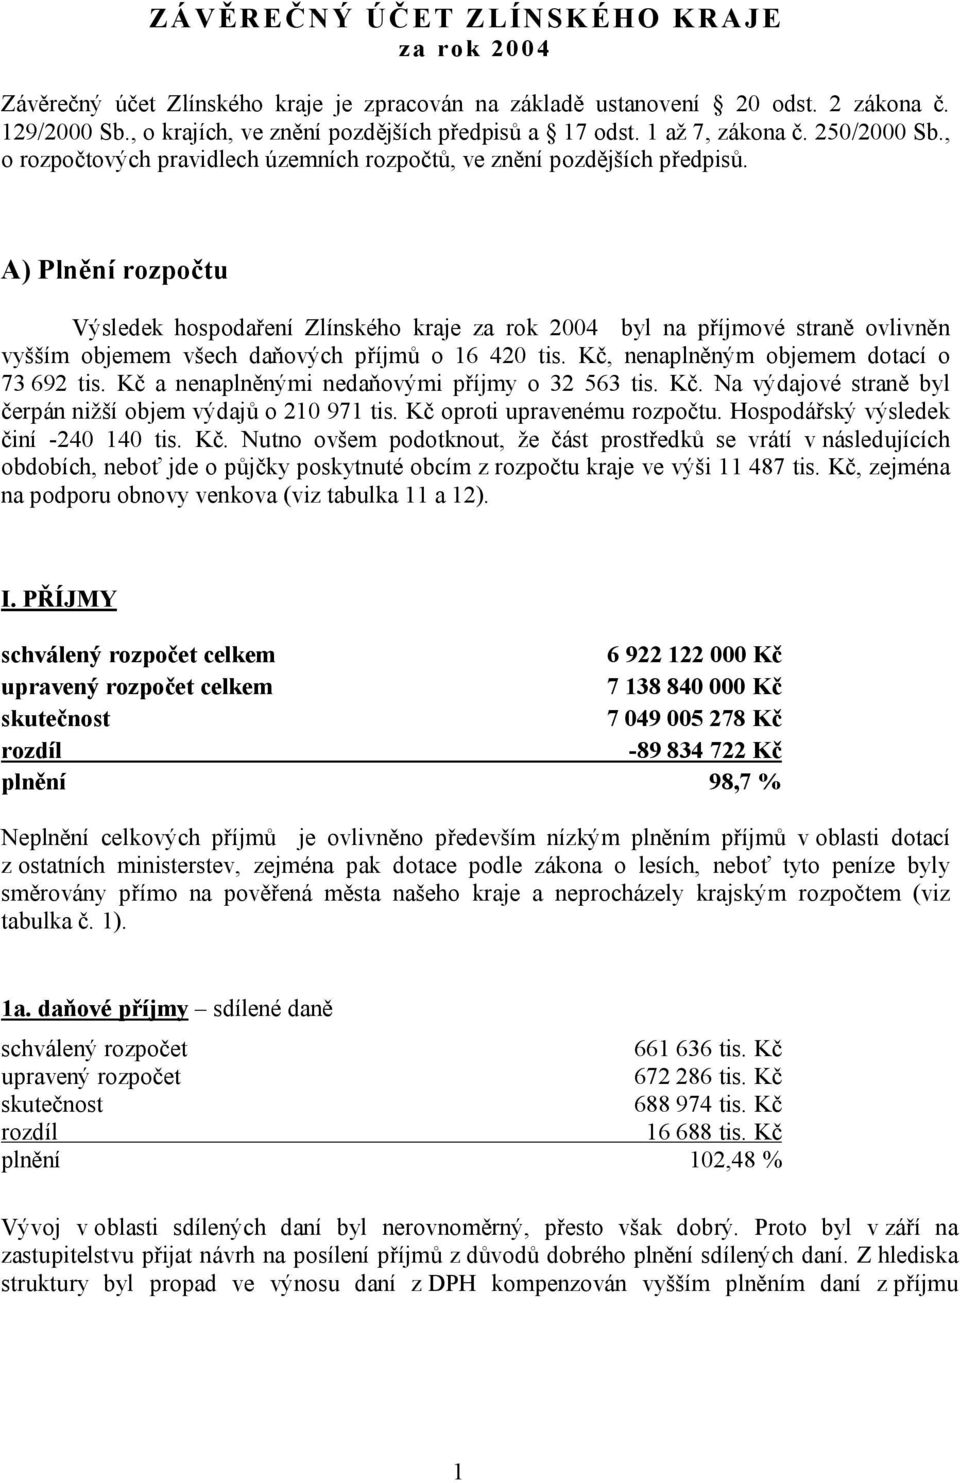 A) Plnění rozpočtu Výsledek hospodaření Zlínského kraje za rok 2004 byl na příjmové straně ovlivněn vyšším objemem všech daňových příjmů o 16 420 tis. Kč, nenaplněným objemem dotací o 73 692 tis.